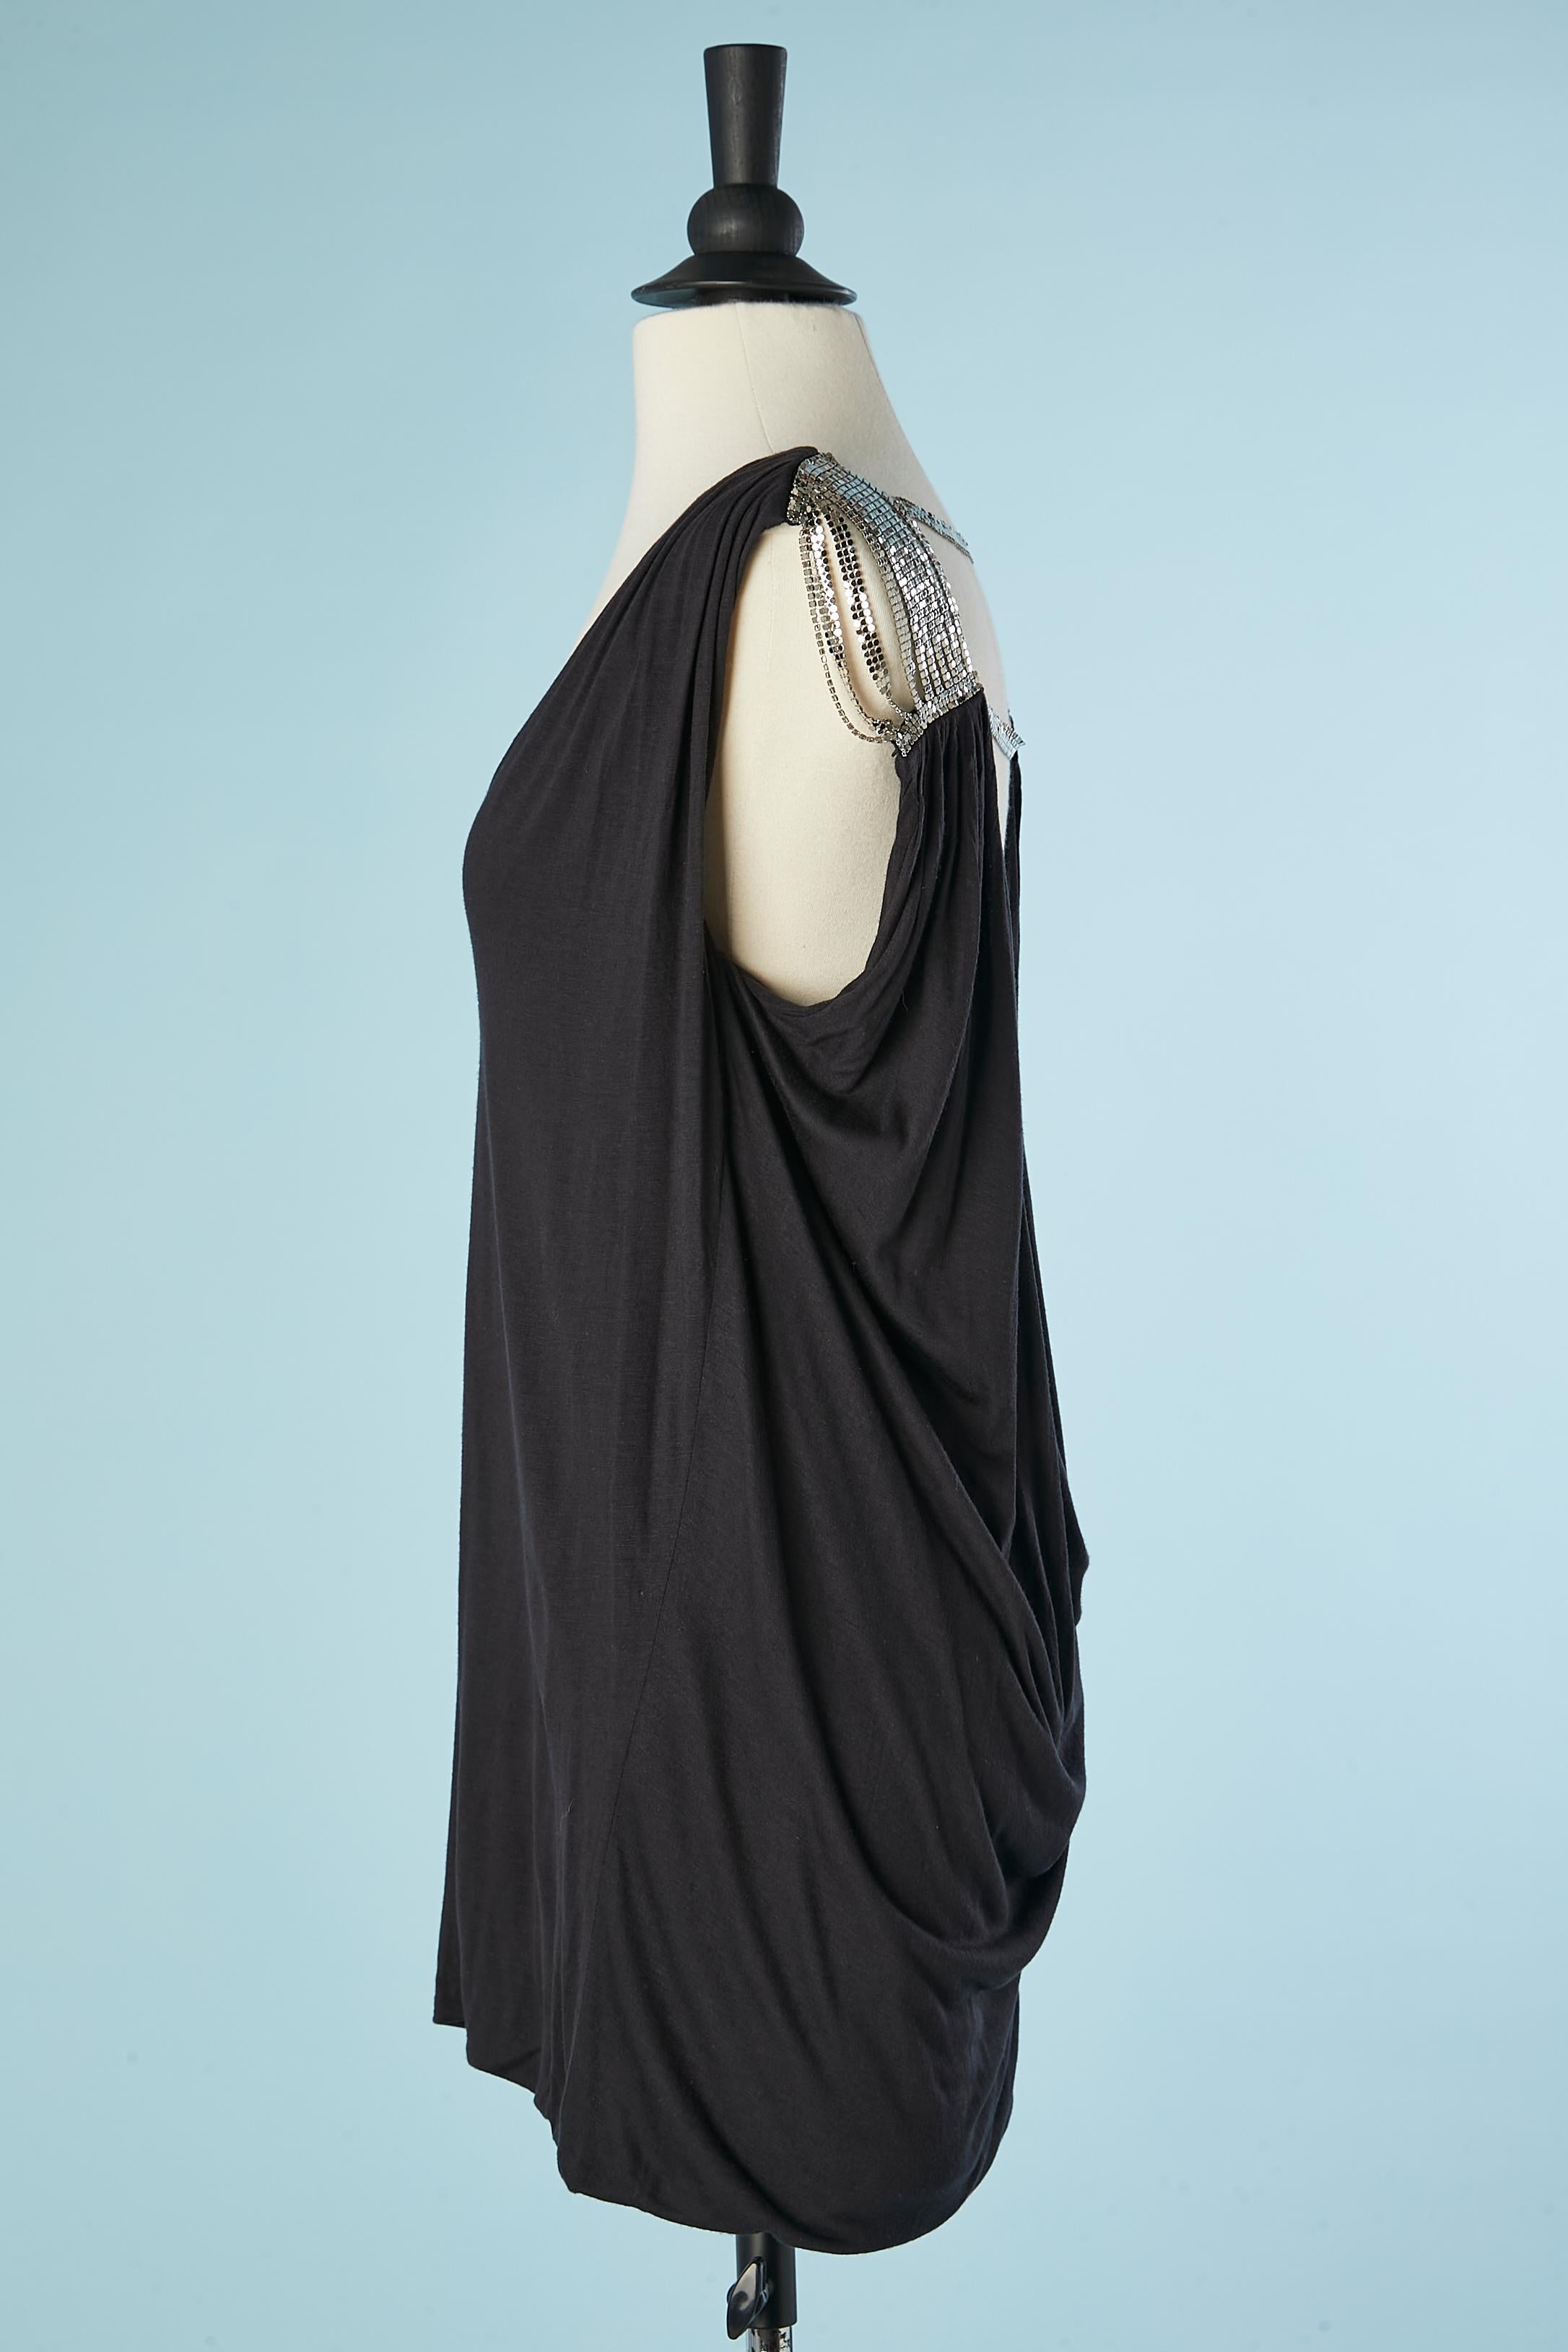 Top sans manches en jersey noir avec détails en cotte de mailles sur les épaules. Composition du tissu : 90% modal, 10% soie. 
TAILLE M 